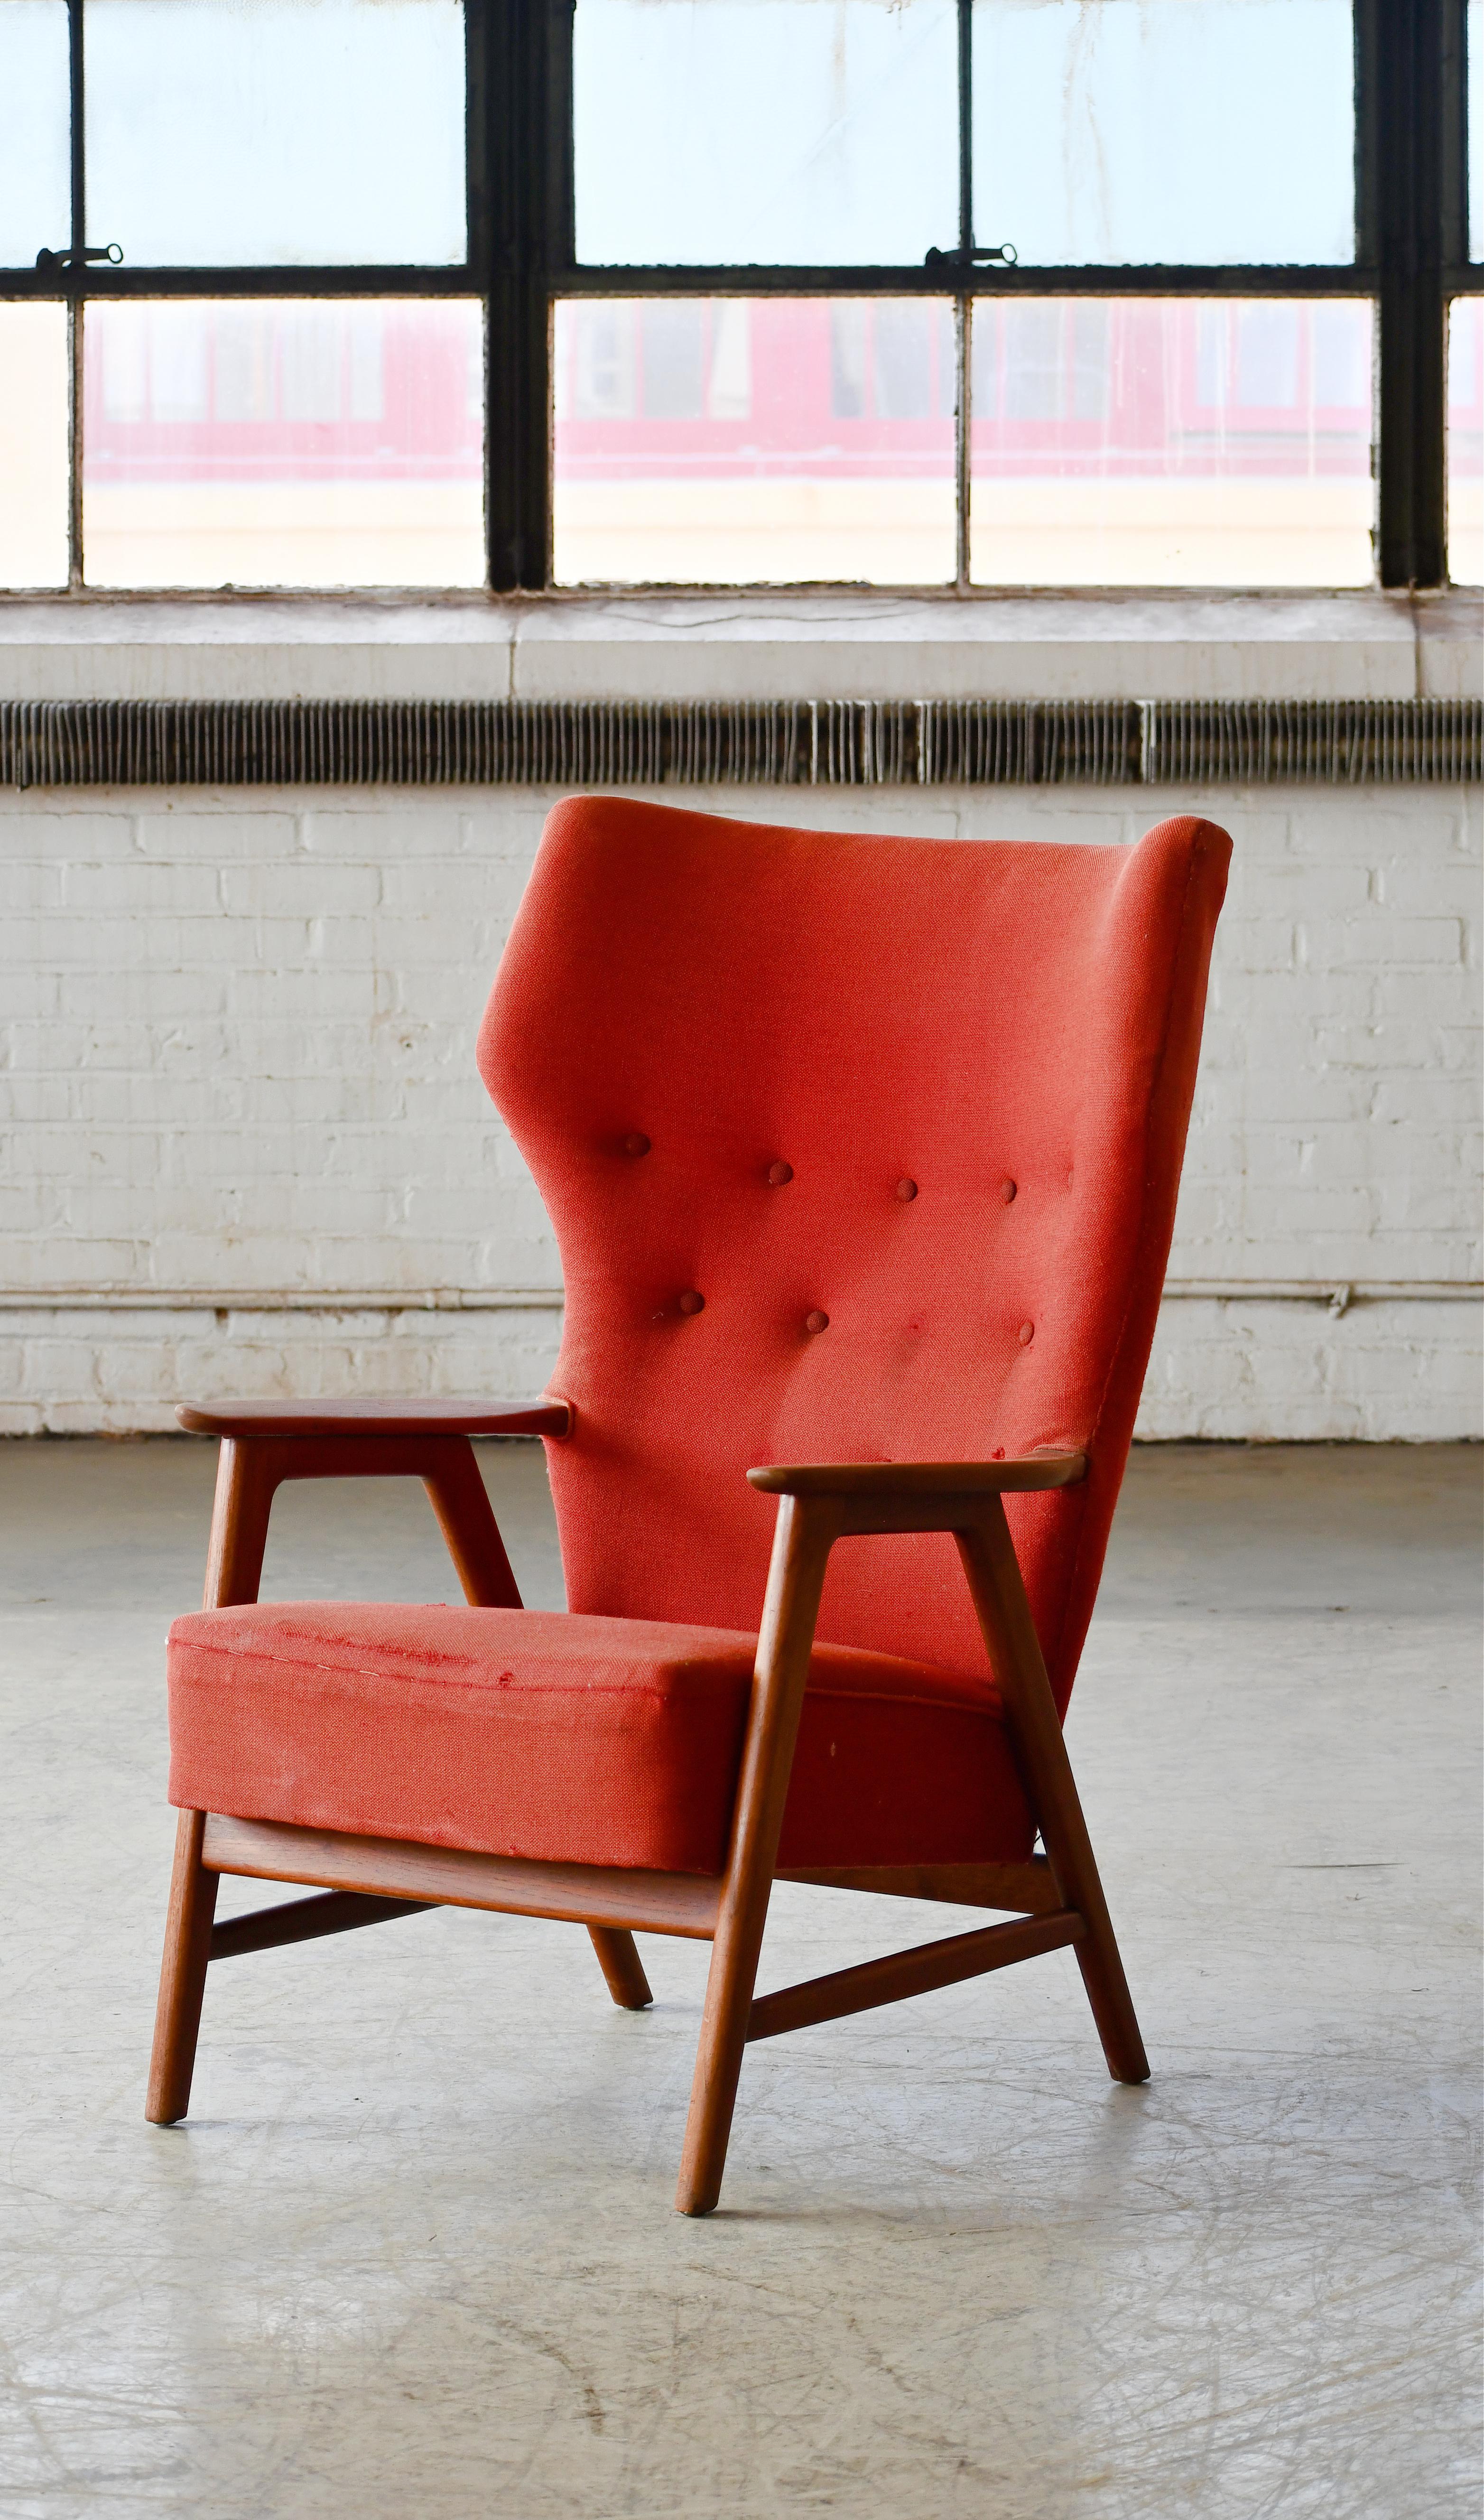 Fauteuil danois très cool du milieu du siècle en hêtre teinté recouvert de laine et très représentatif des fauteuils faciles de l'époque conçus par des icônes telles que Ib Kofod-Larsen et Edvard Kindt-Larsen. Cette chaise est très proche du style